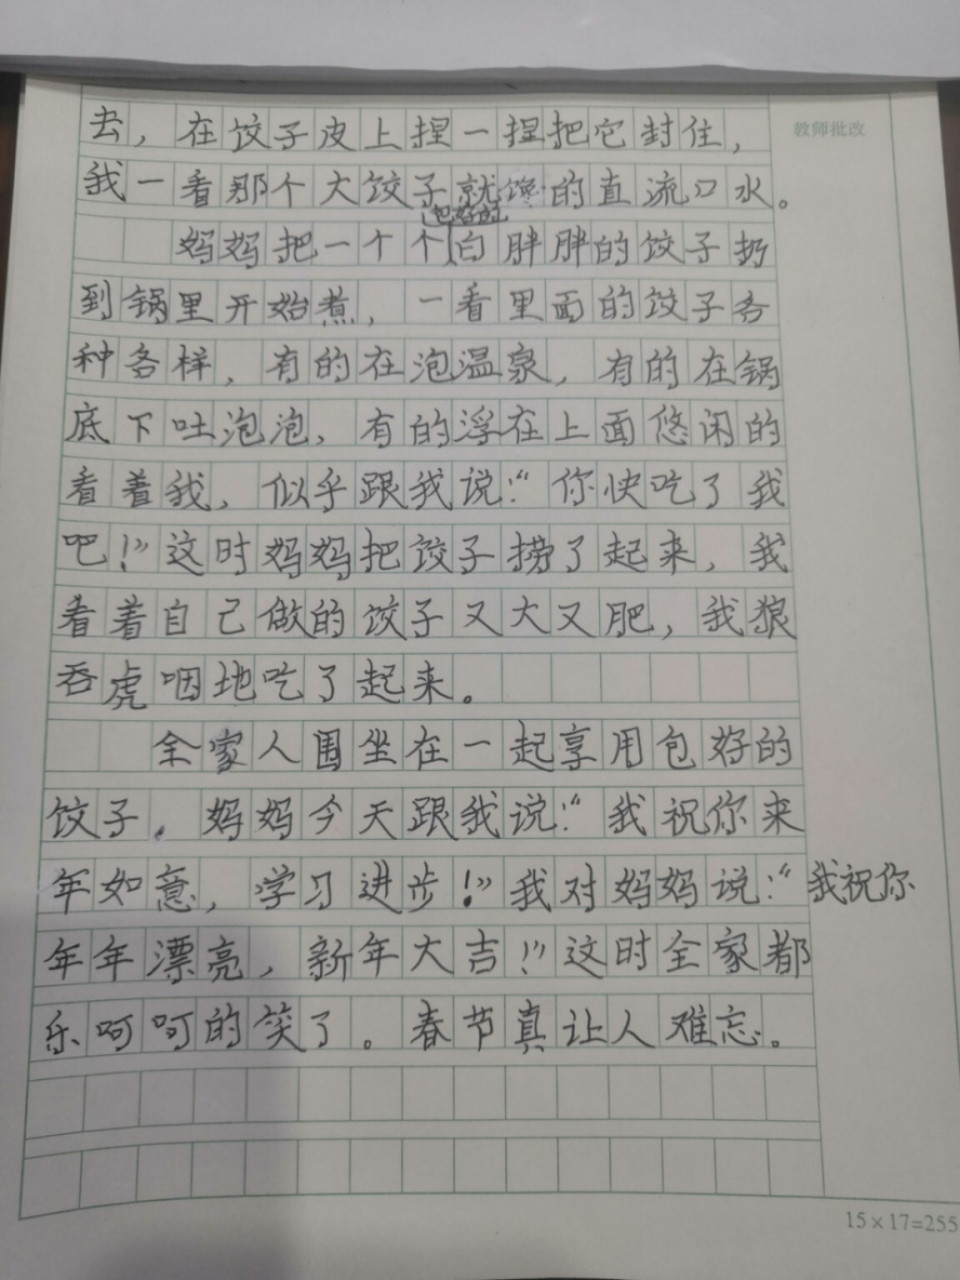 三年级春节图文日记图片